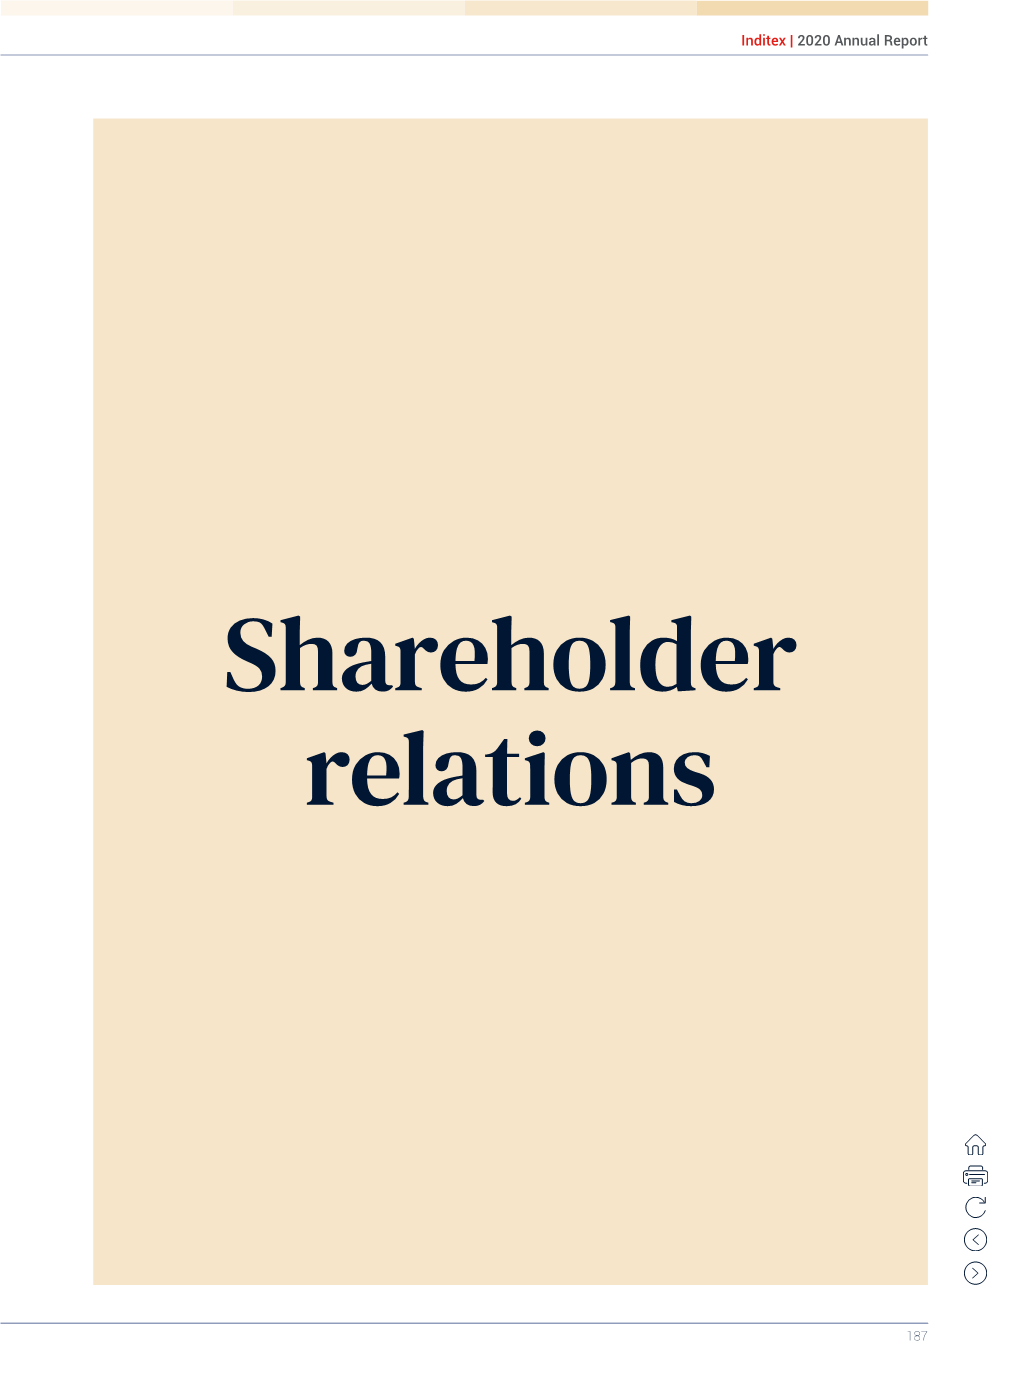 Shareholder Relations